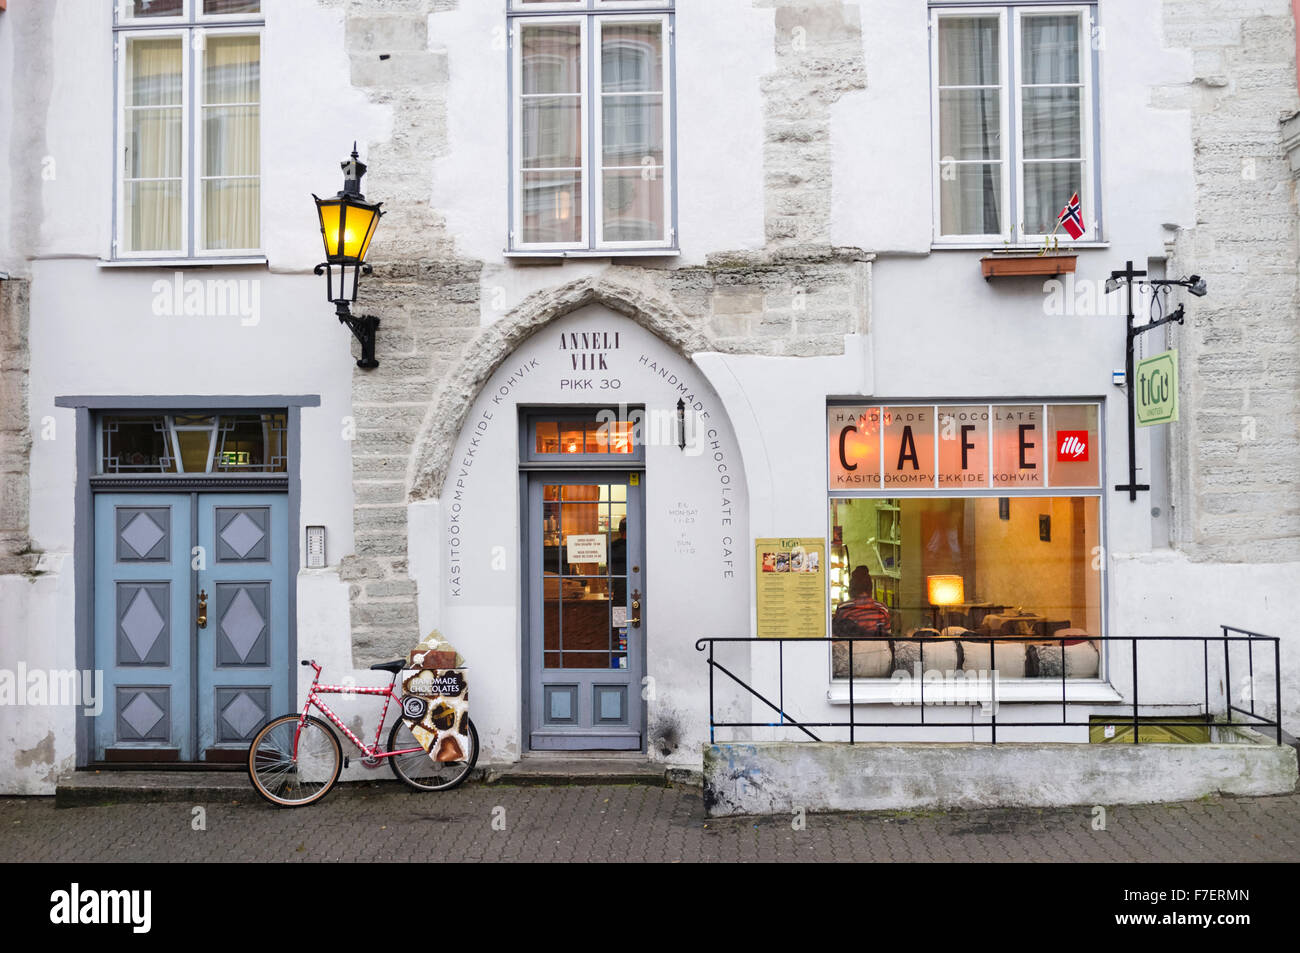 Anneli Viik Cafe Chocolat dans la vieille ville de Tallinn, Estonie Banque D'Images